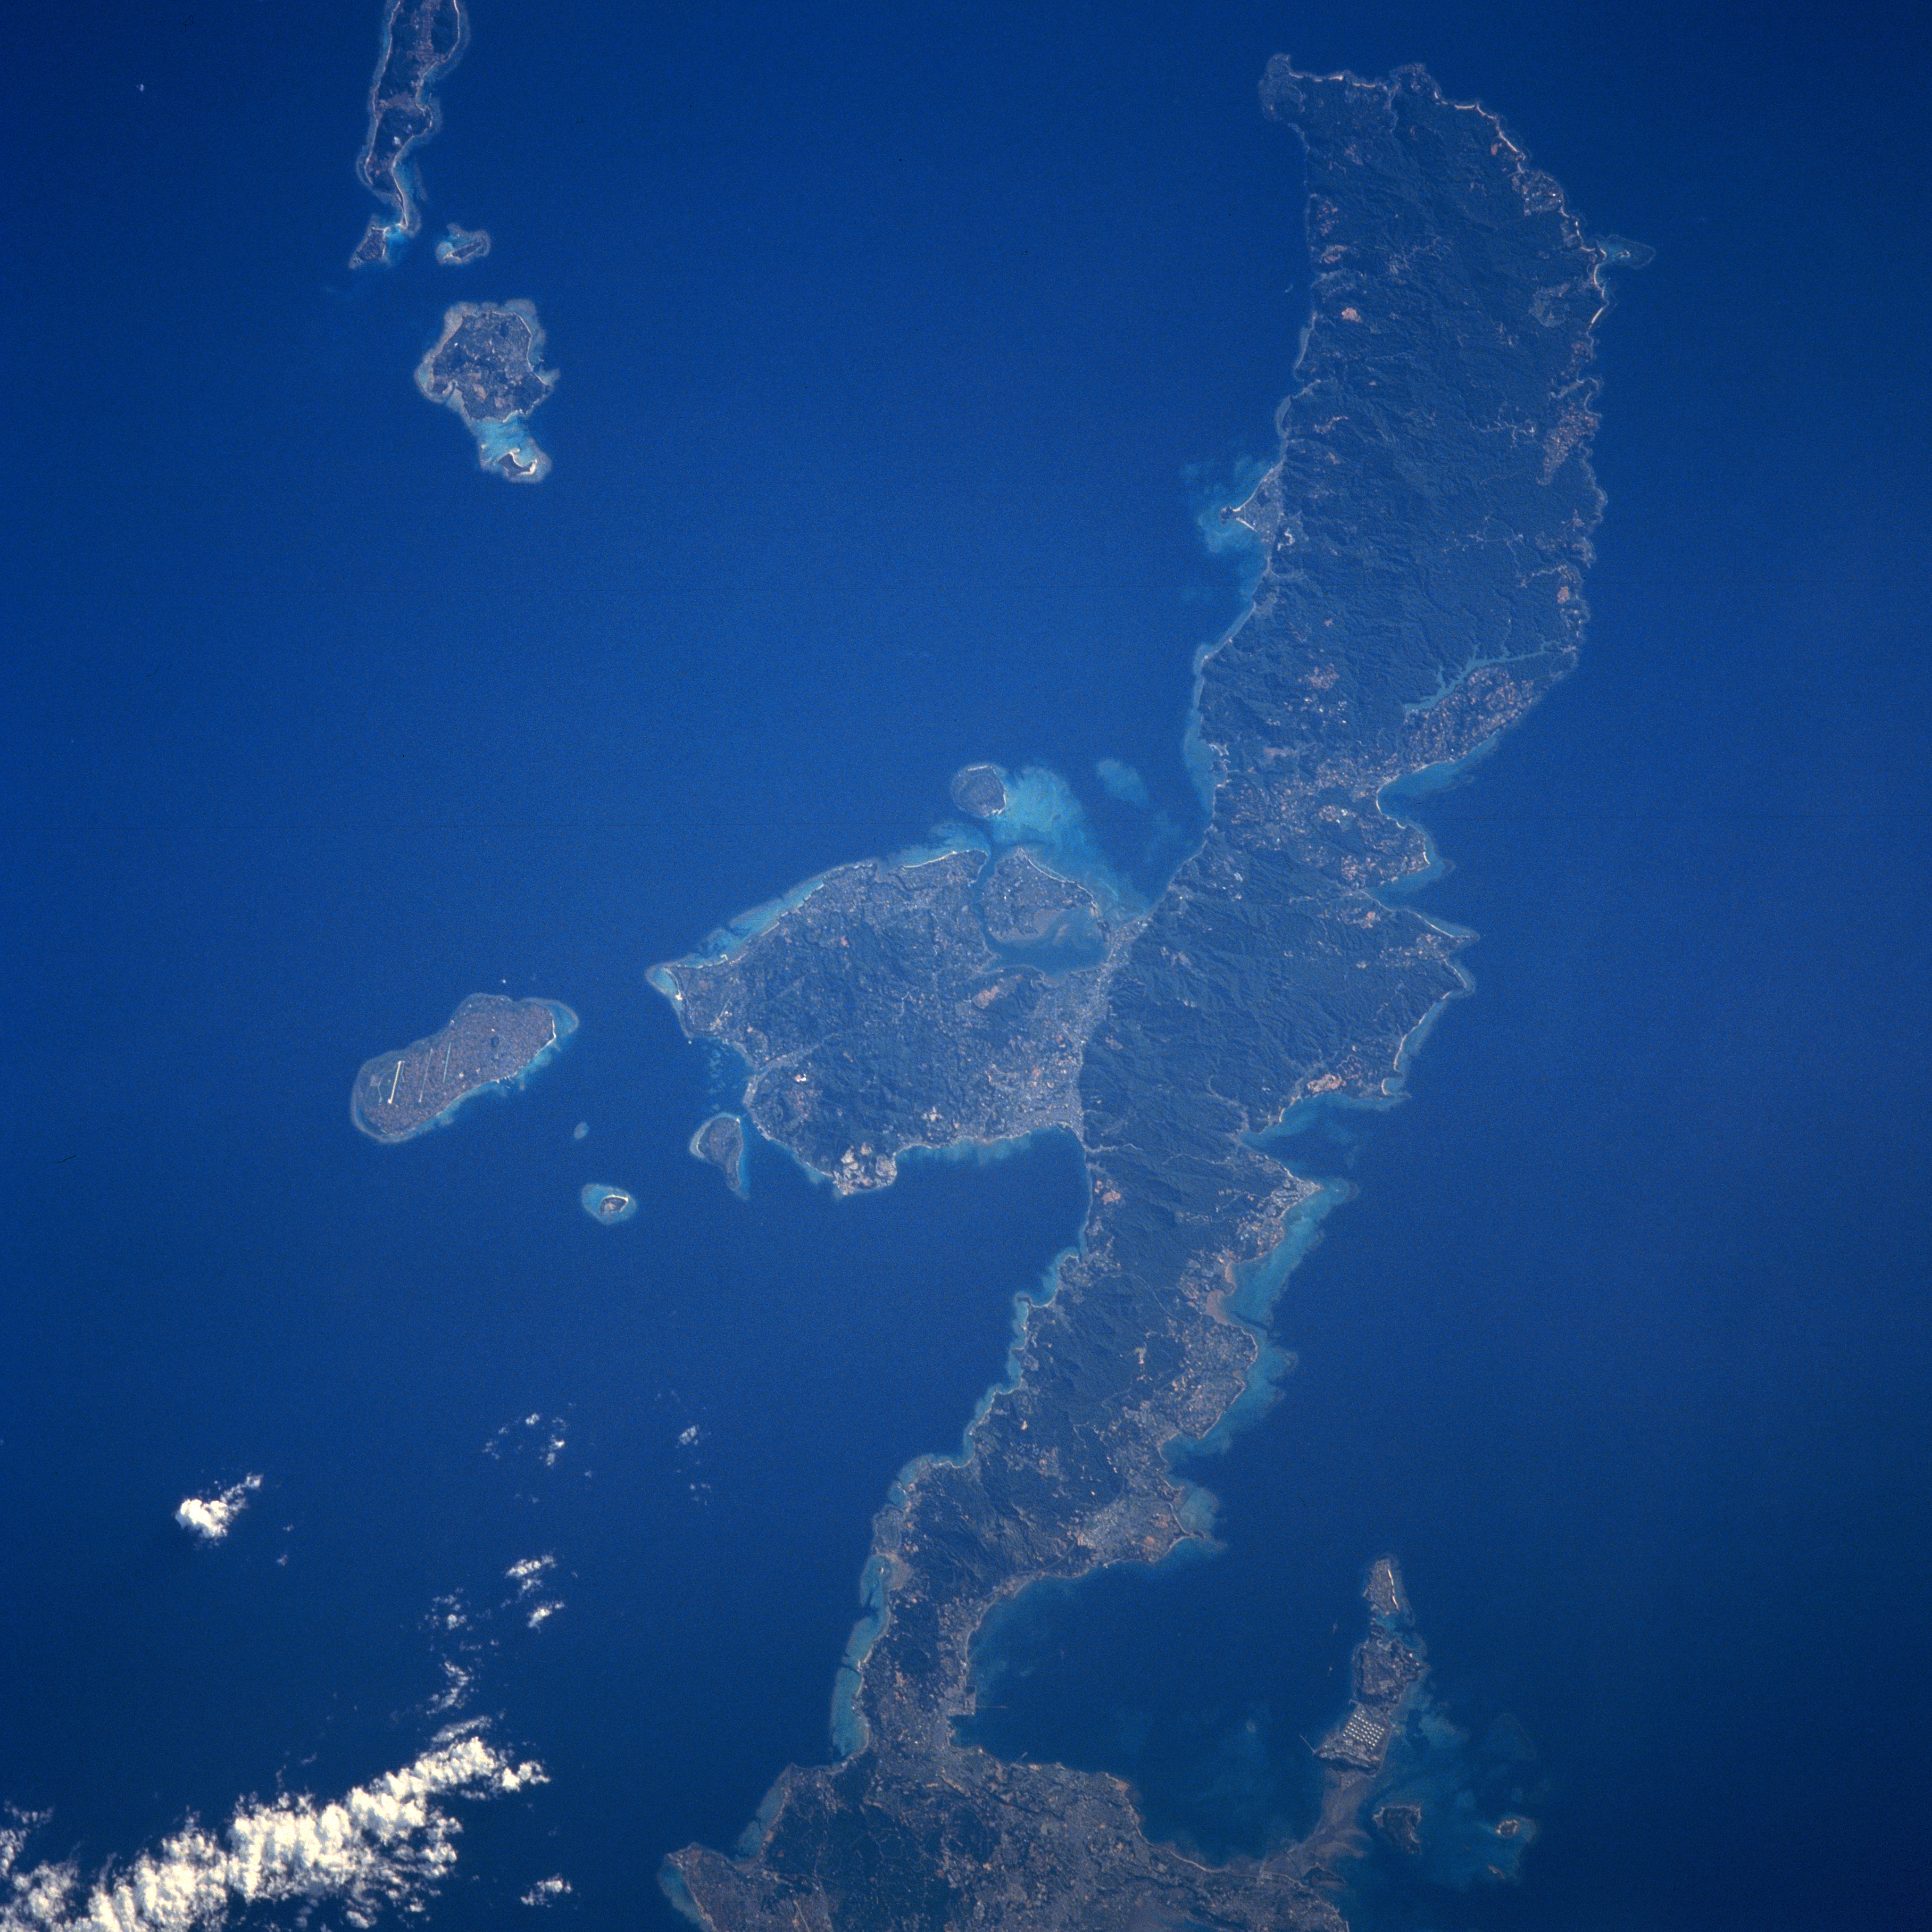 Крупнейшие архипелаги тихого океана. Острова Рюкю. Архипелаг Окинава. Архипелаг Рюкю. Острова Рюкю и Кюсю.